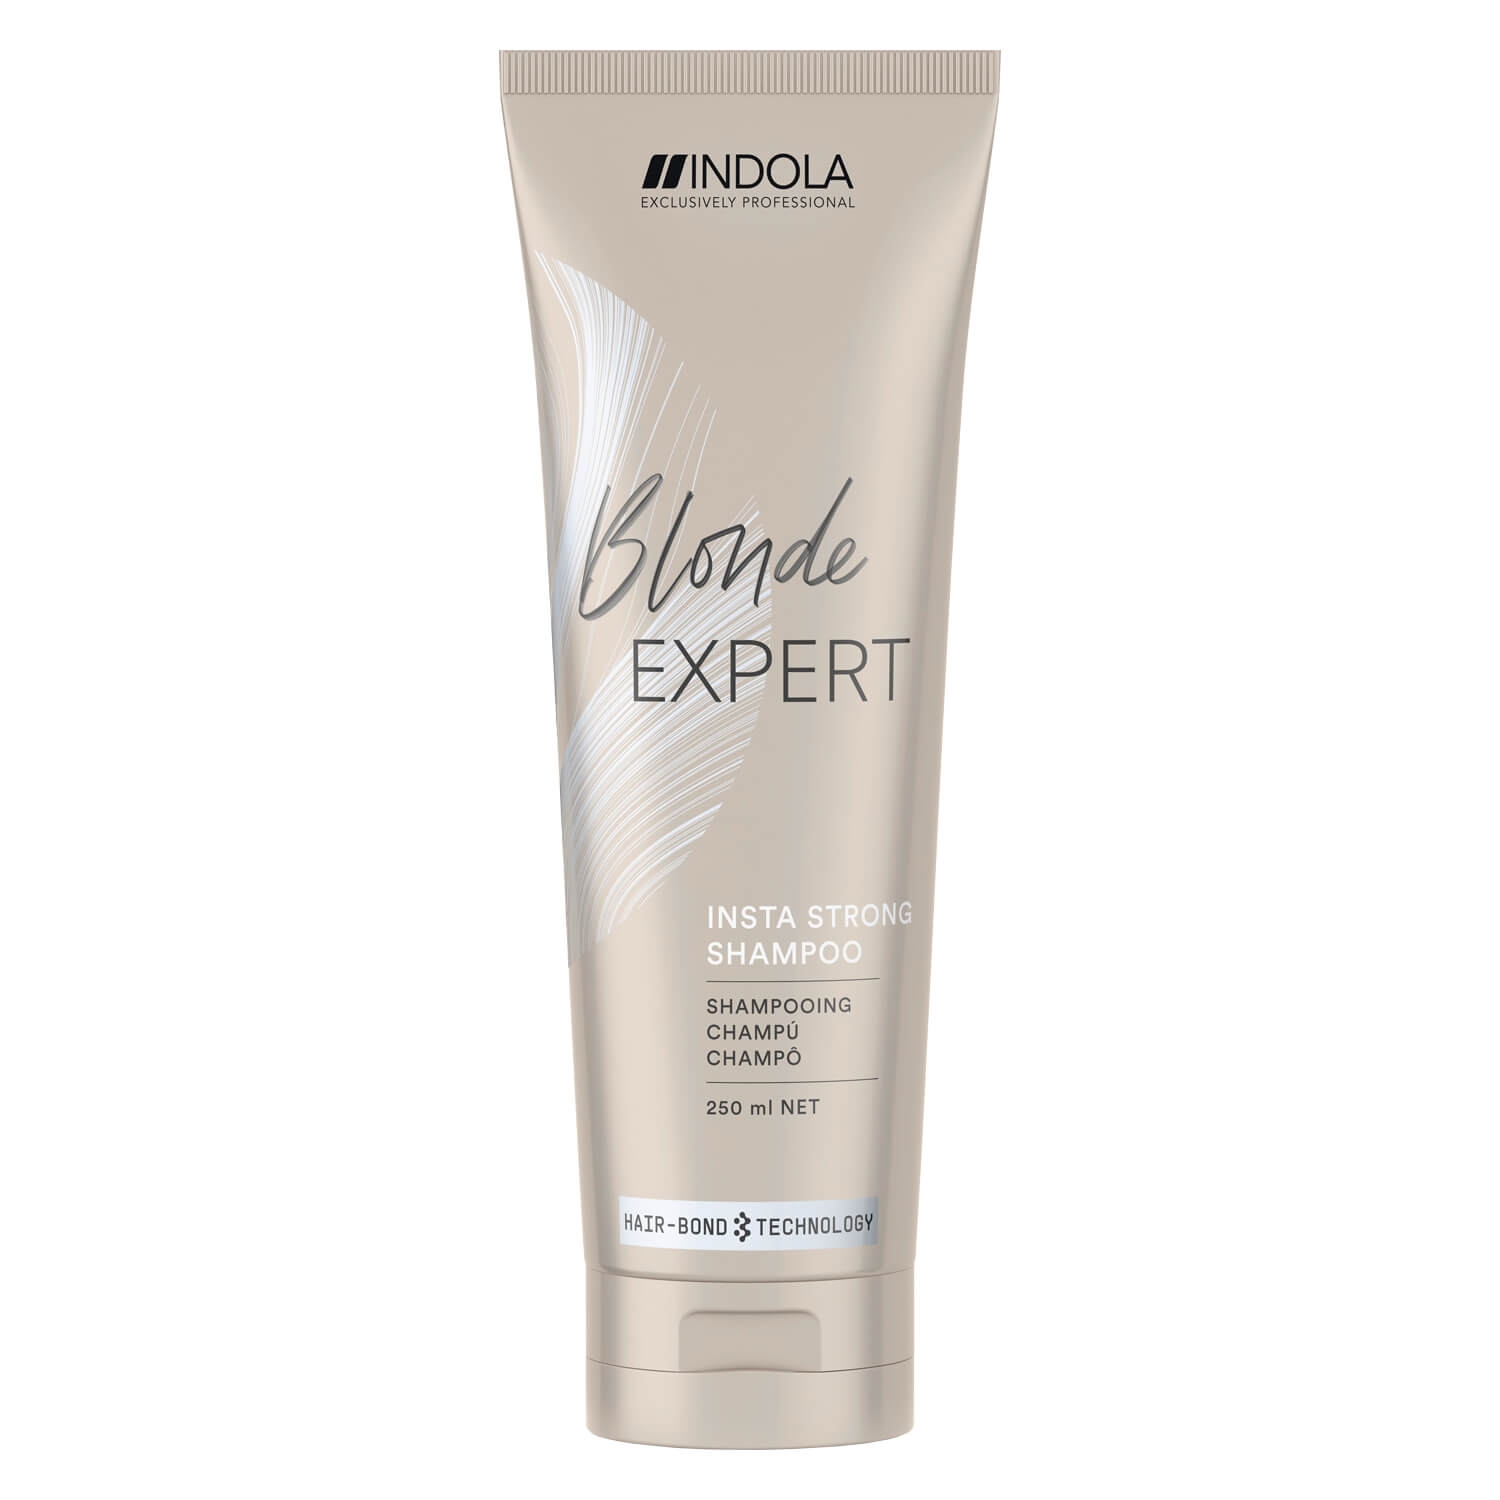 Produktbild von Blonde Expert - Insta Strong Shampoo